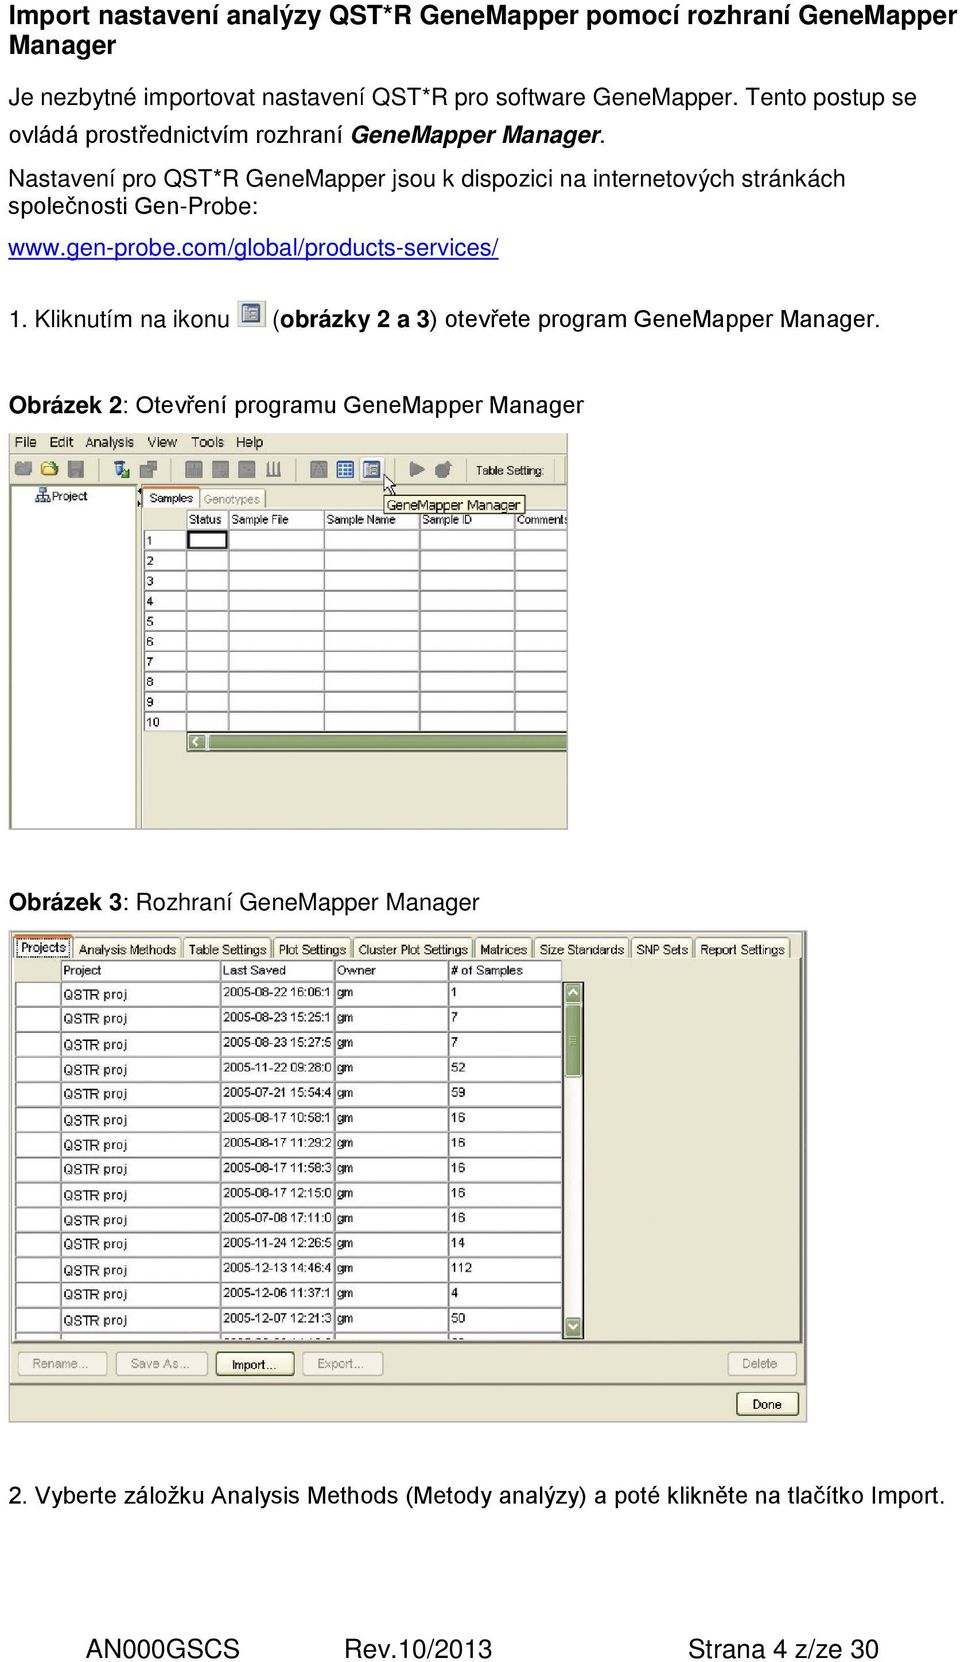 Nastavení pro QST*R GeneMapper jsou k dispozici na internetových stránkách společnosti Gen-Probe: www.gen-probe.com/global/products-services/ 1.